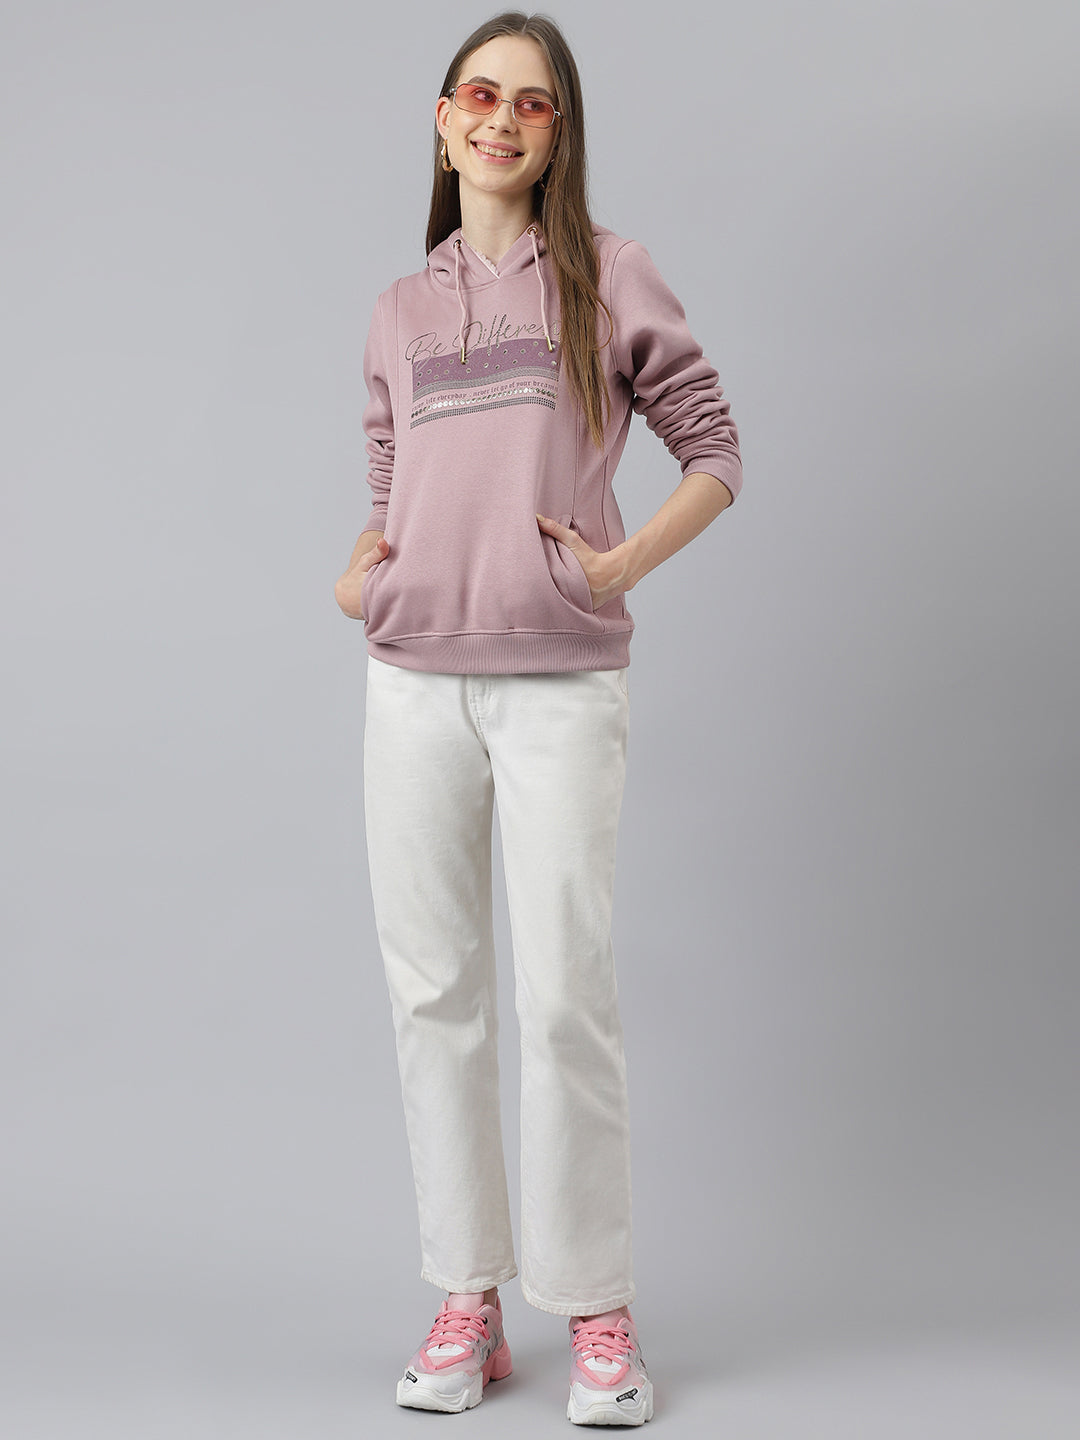 Pink Full Sleeve Hoodie Sweatshirt Knit Top for Women